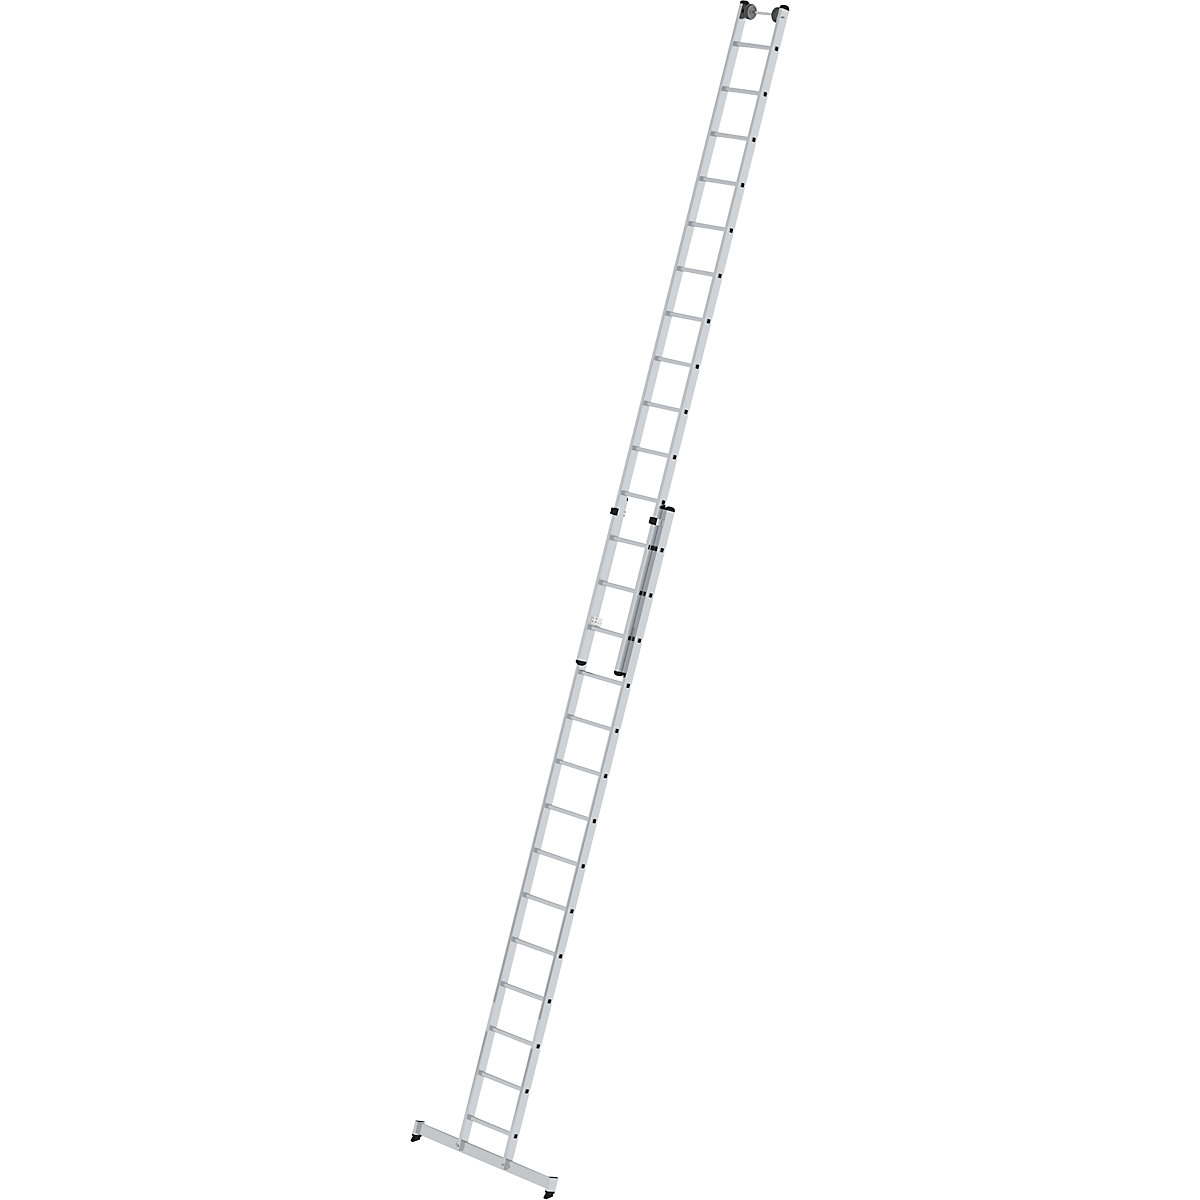 Aanlegladder, in hoogte verstelbaar – MUNK, schuifladder, 2-delig, 2 x 14 sporten, met nivello®-stabiliteitsbalk-6